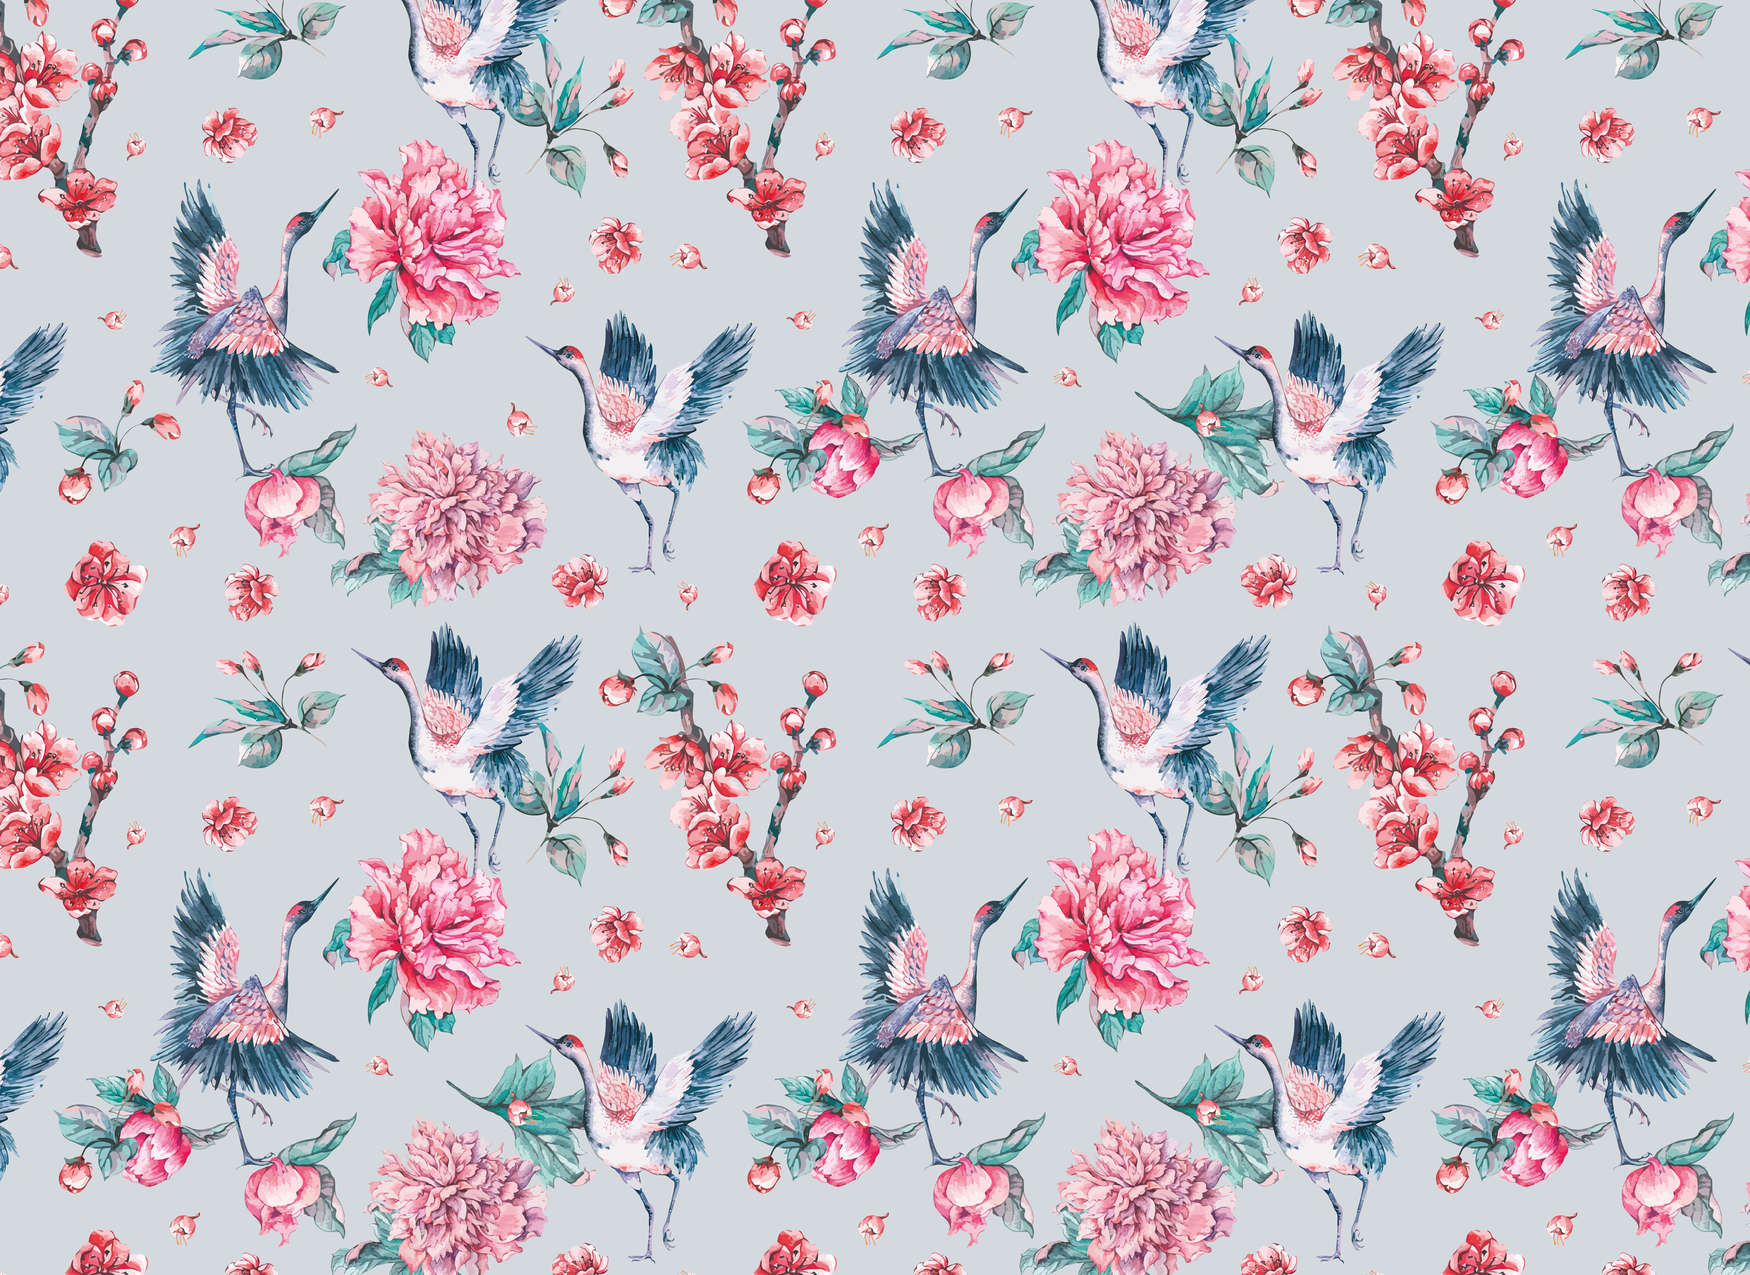             Fototapete florales Muster mit Vögeln und Blättern – Rosa, Blau, Grün
        